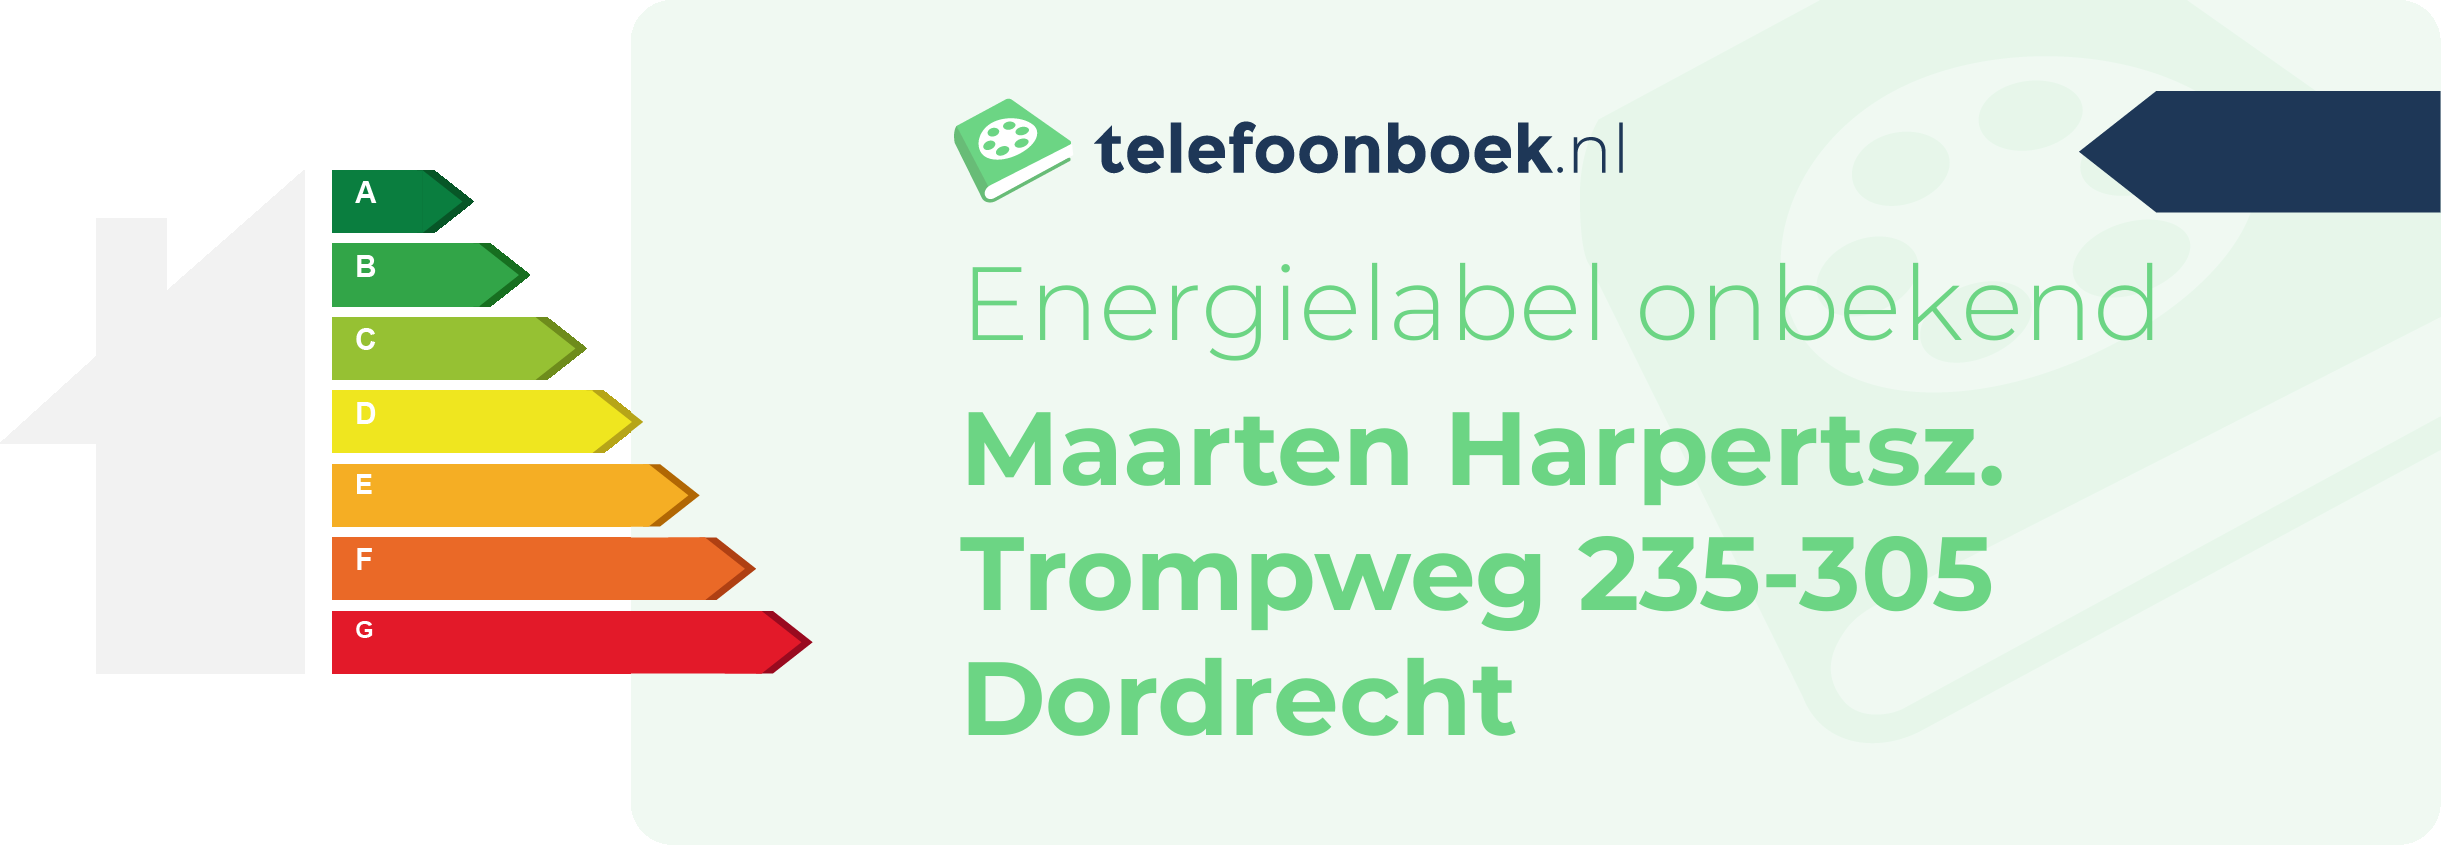 Energielabel Maarten Harpertsz. Trompweg 235-305 Dordrecht